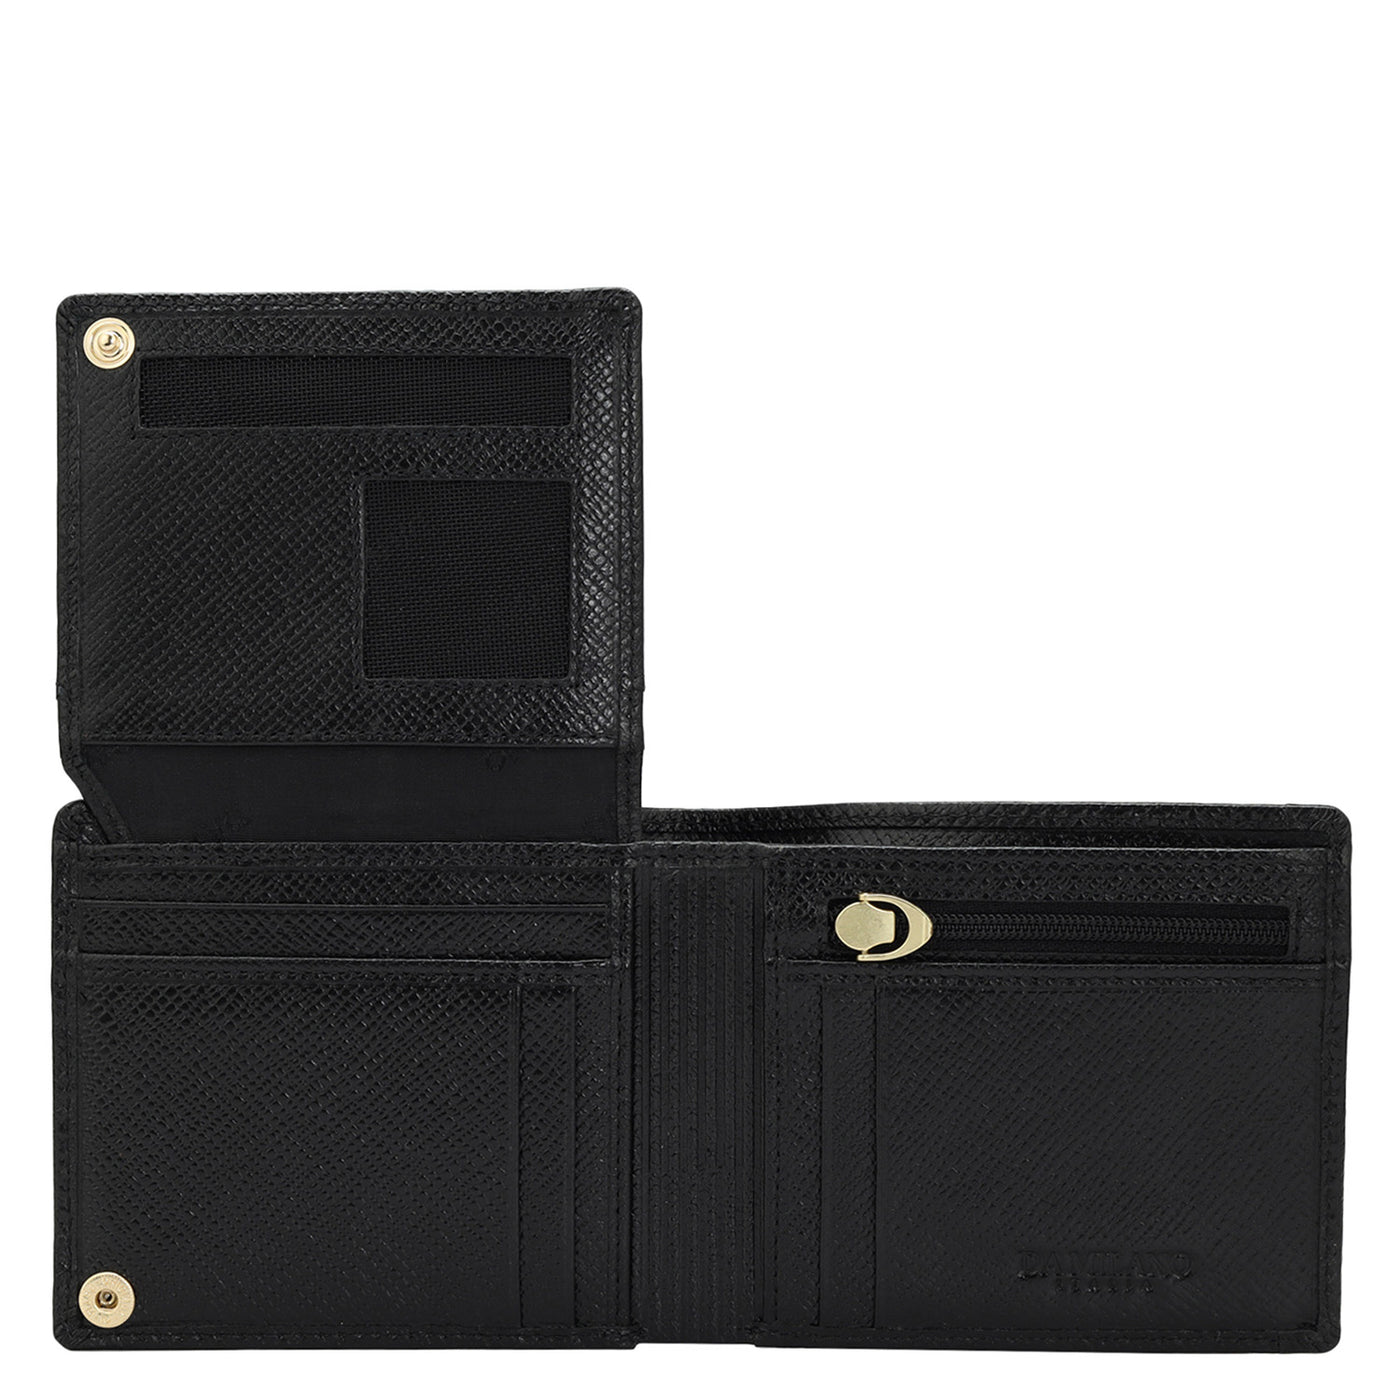 Croco Leather Mens Wallet - Black